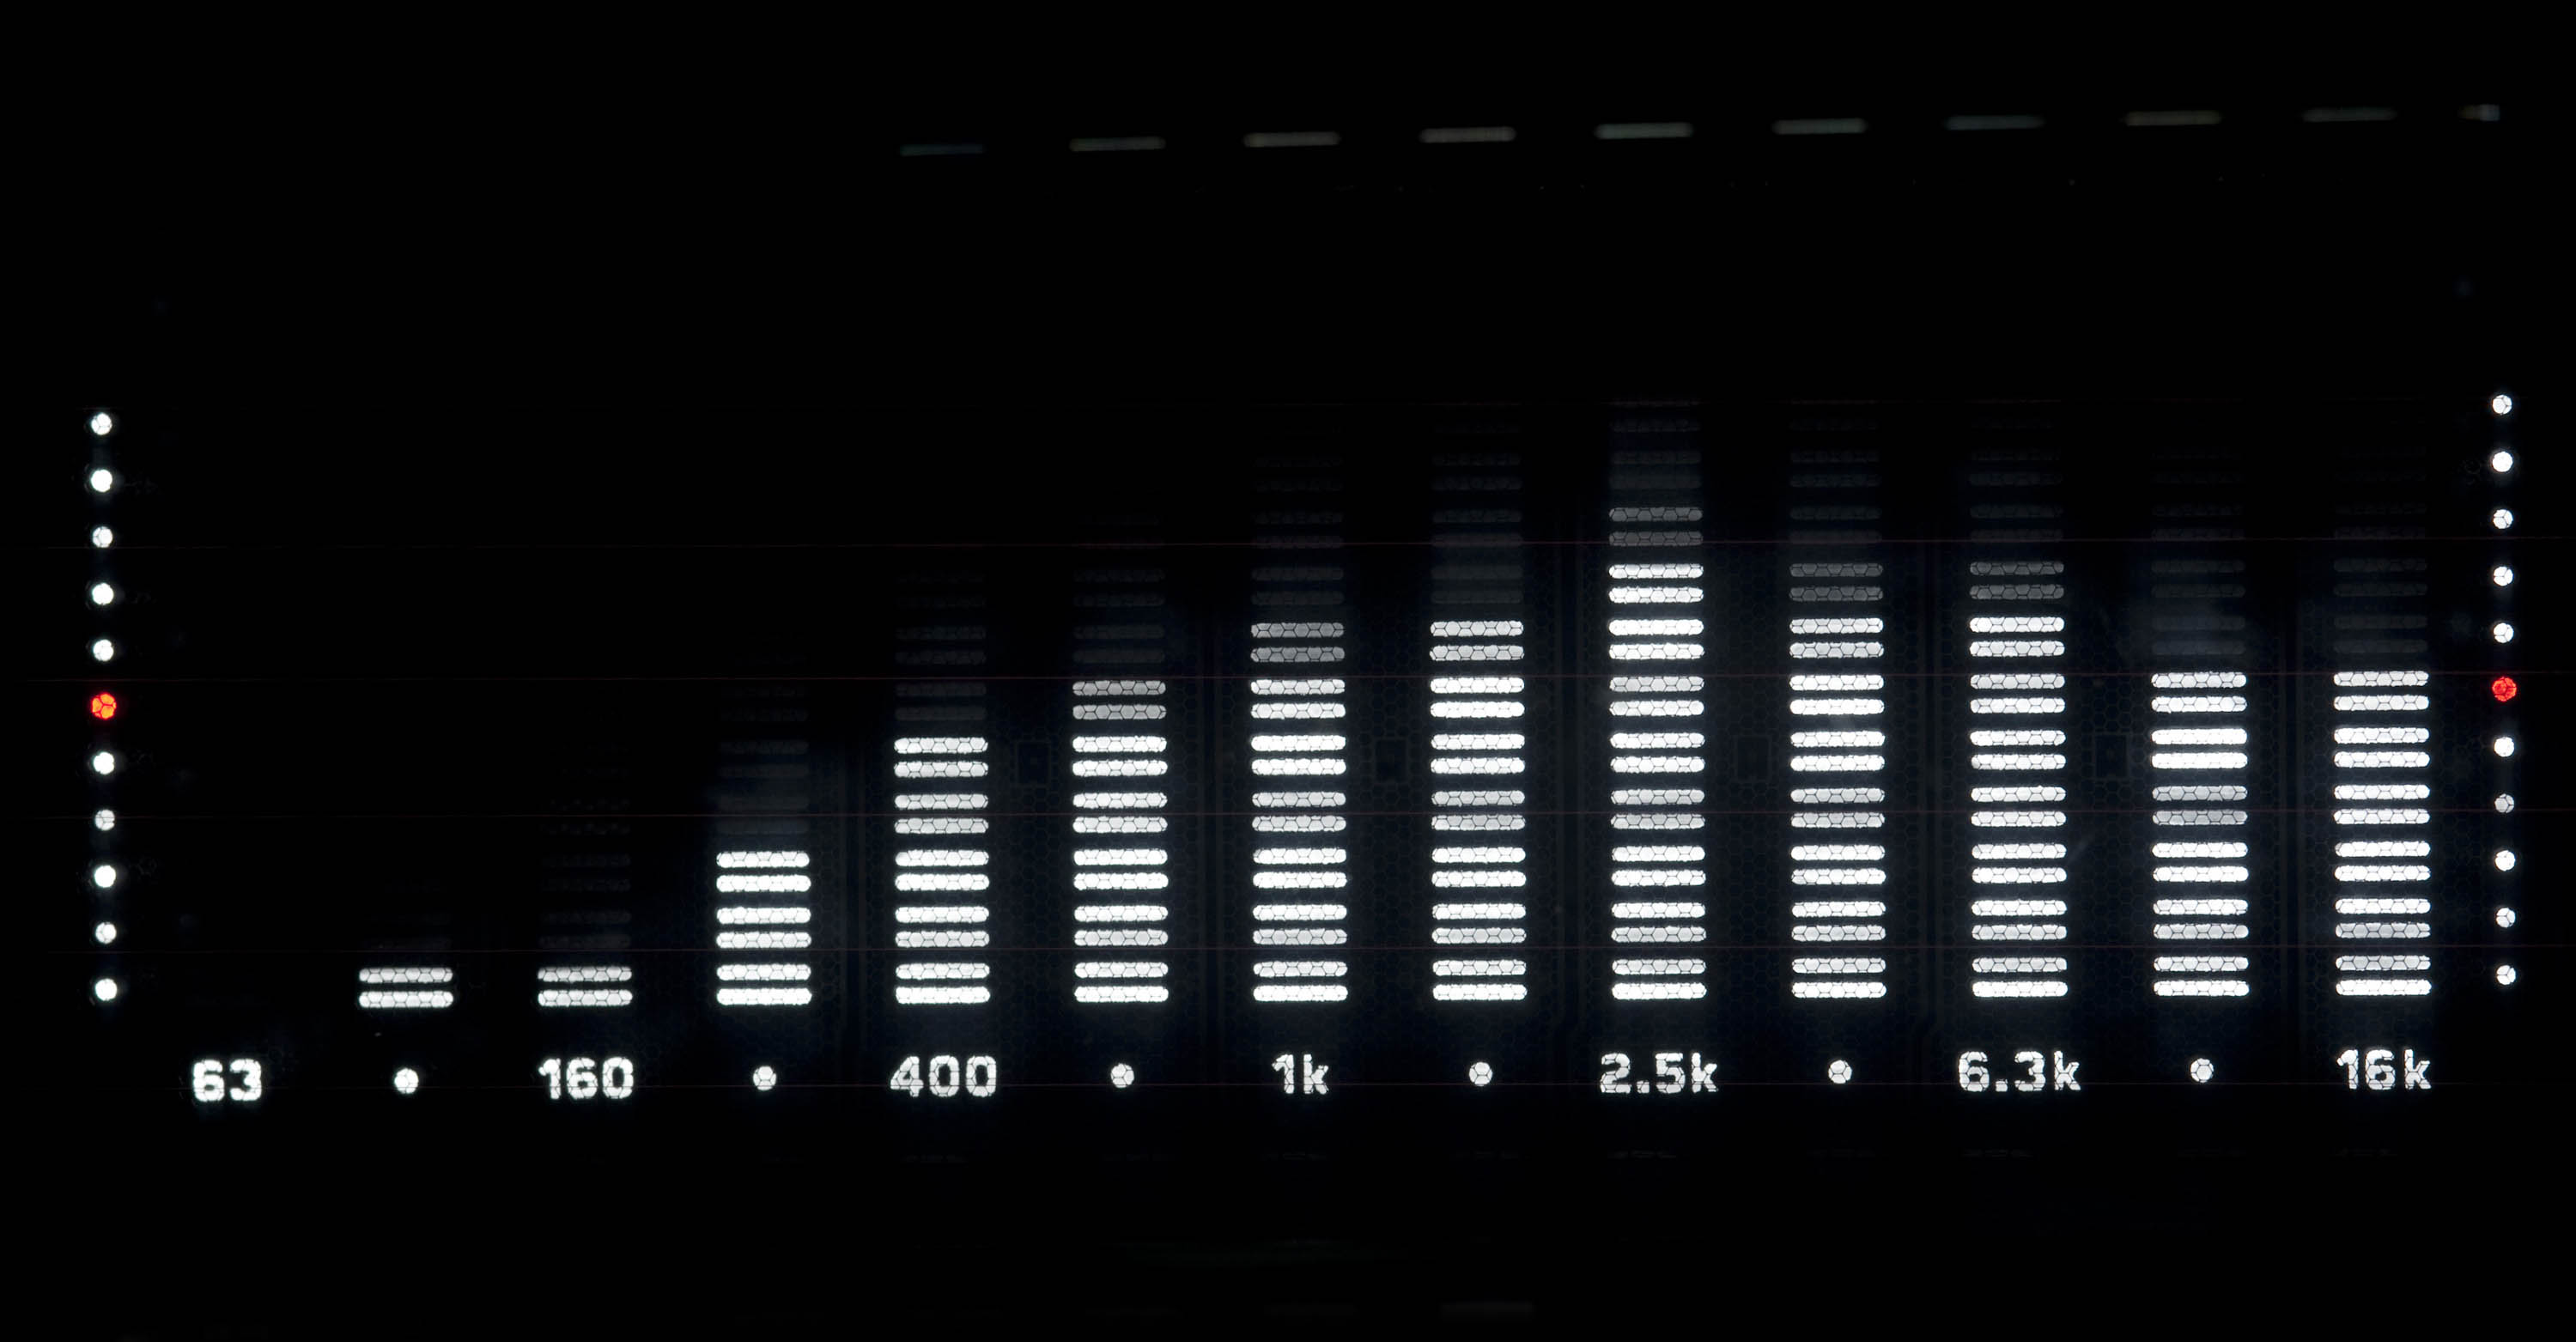 spectrum analyser frequencies